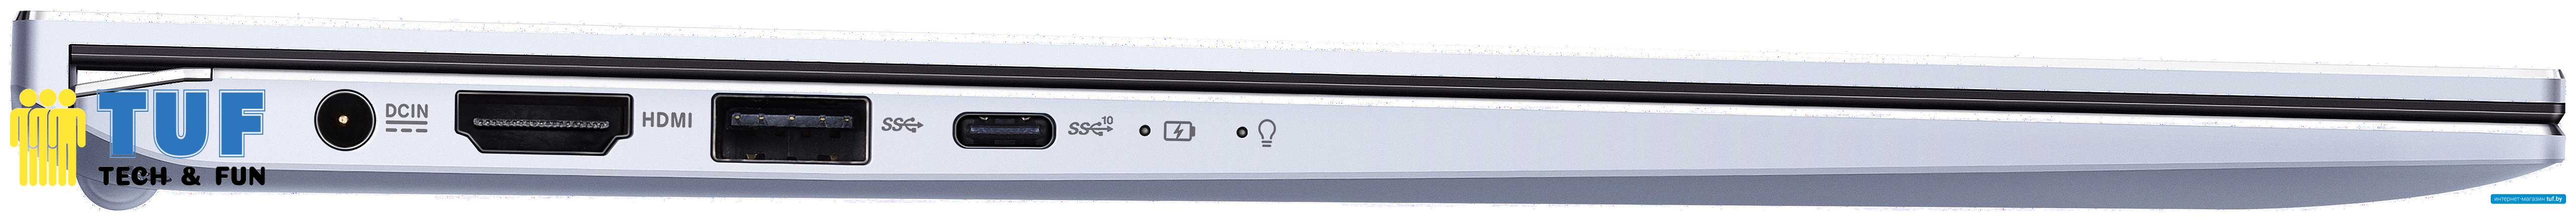 Ноутбук ASUS ZenBook 14 UX431FA-AM157